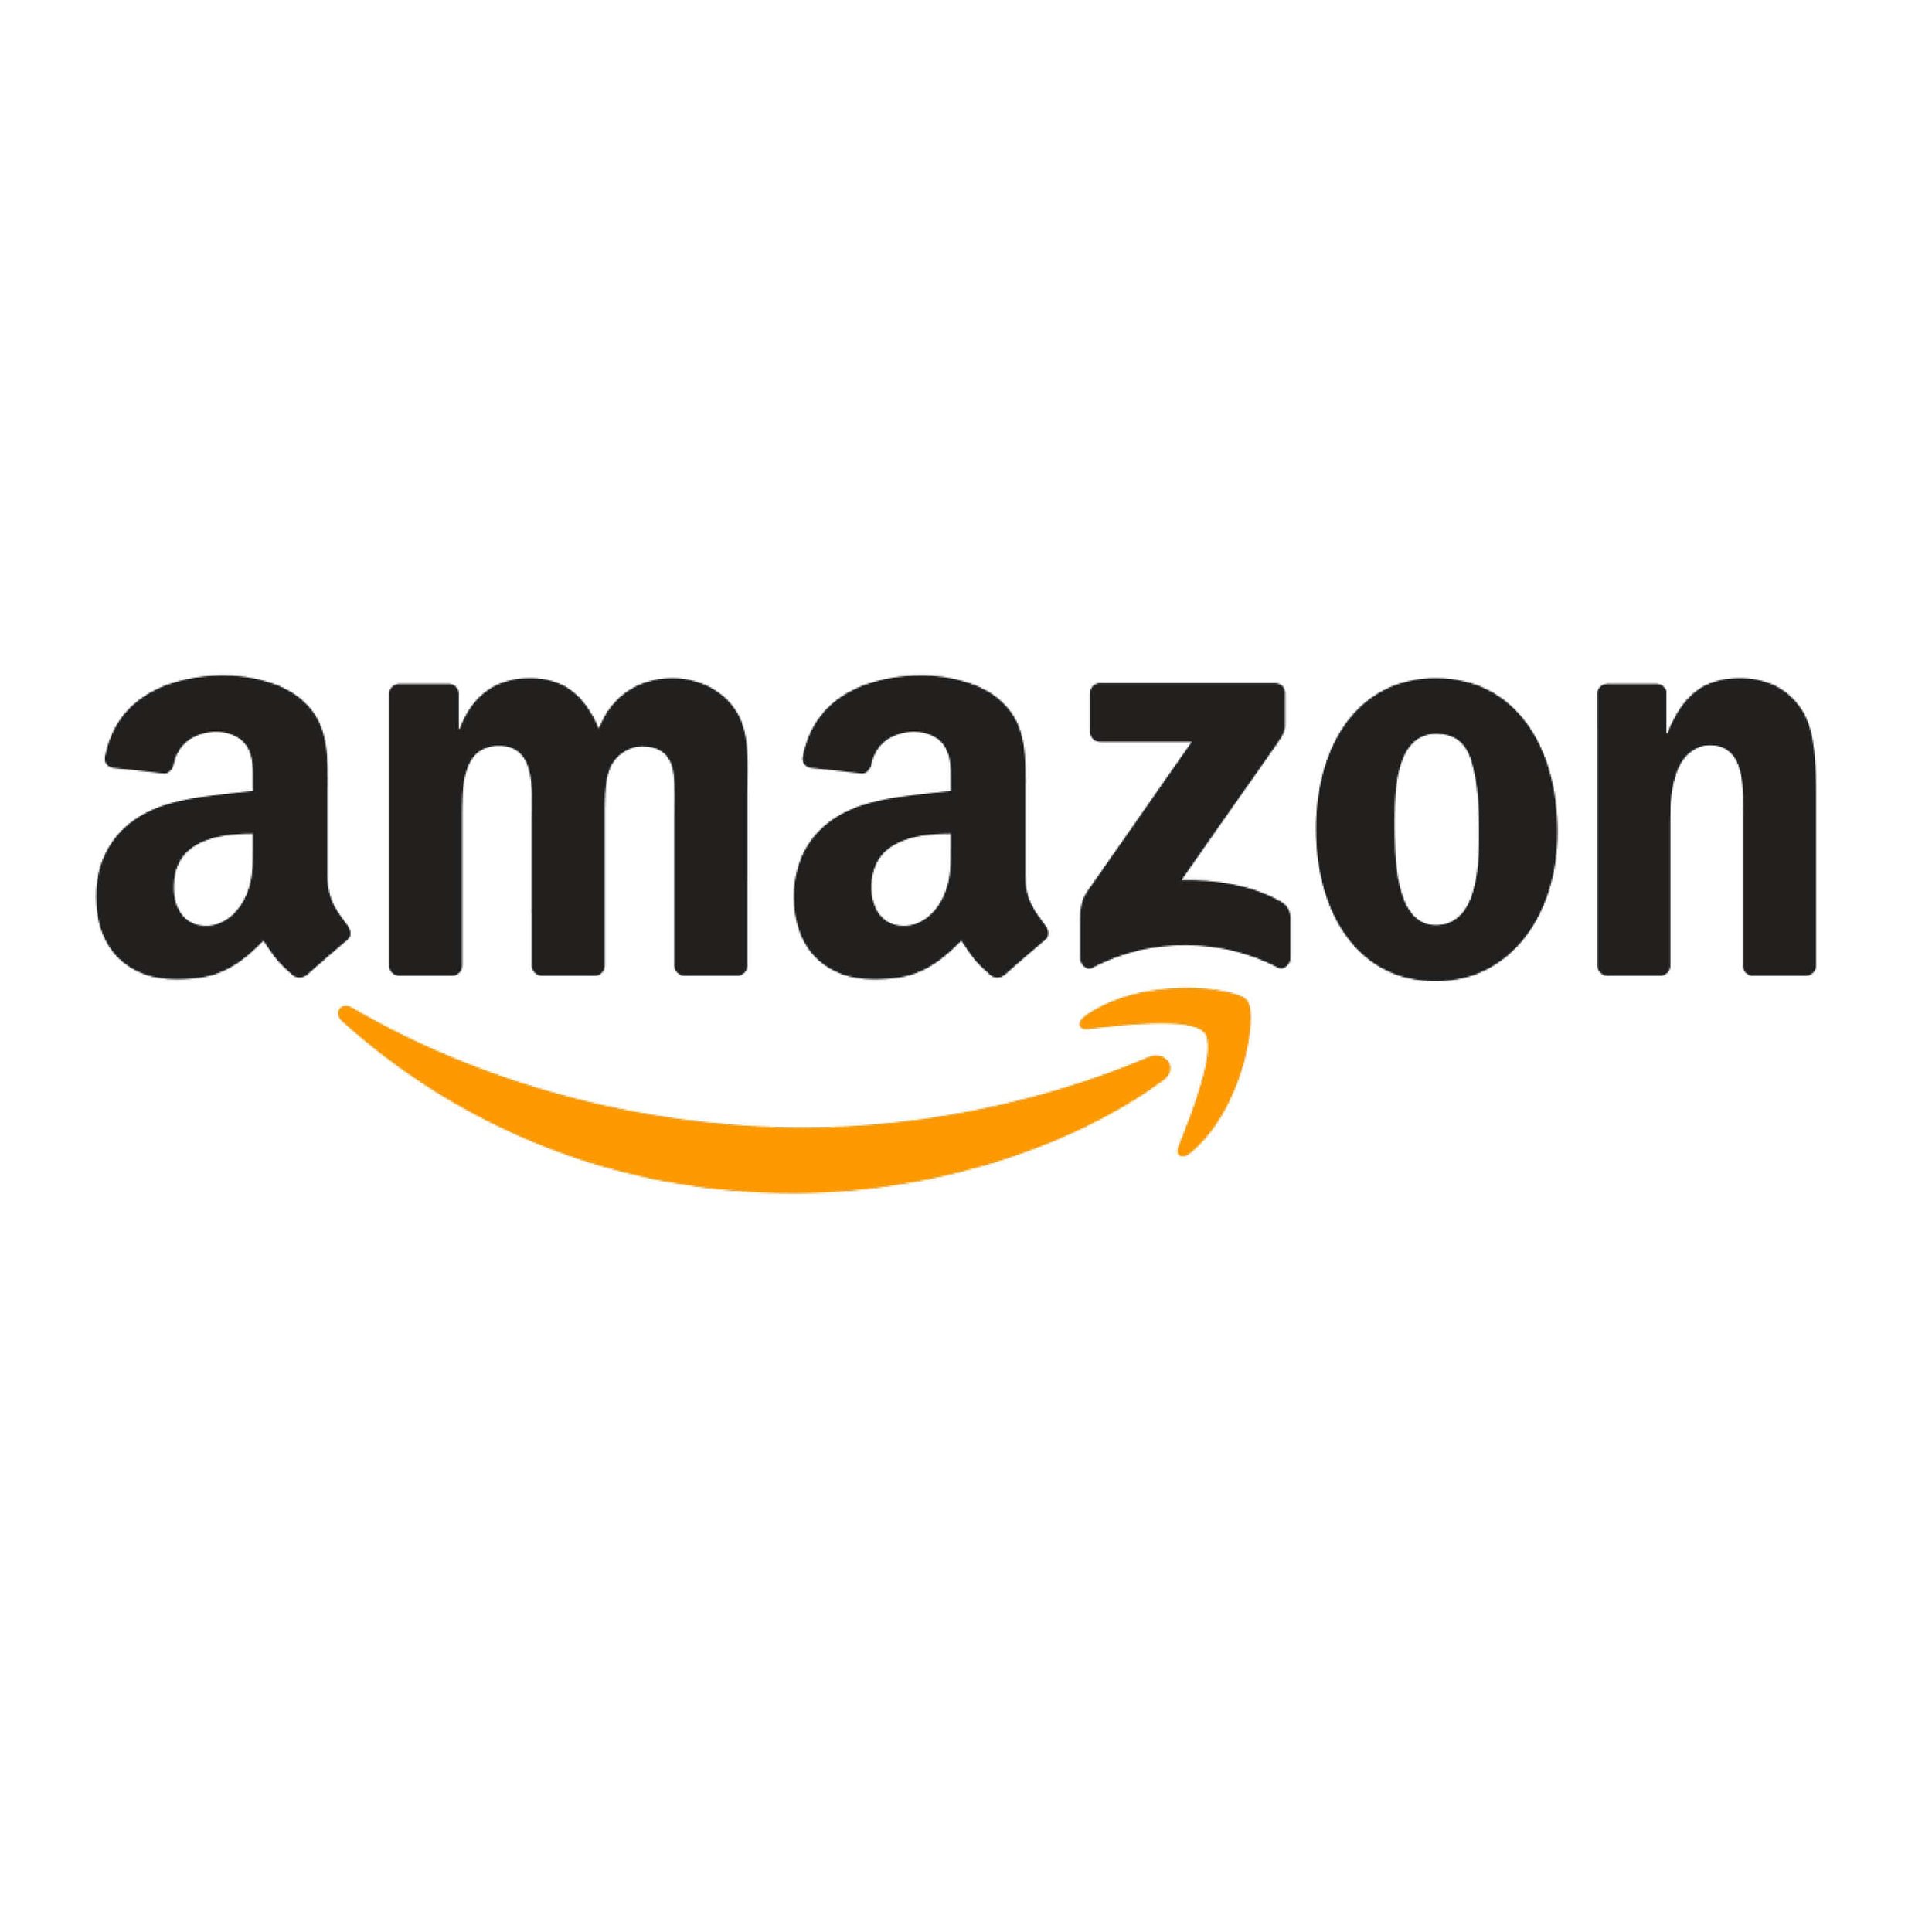 Amazon (Kopie) (Kopie)